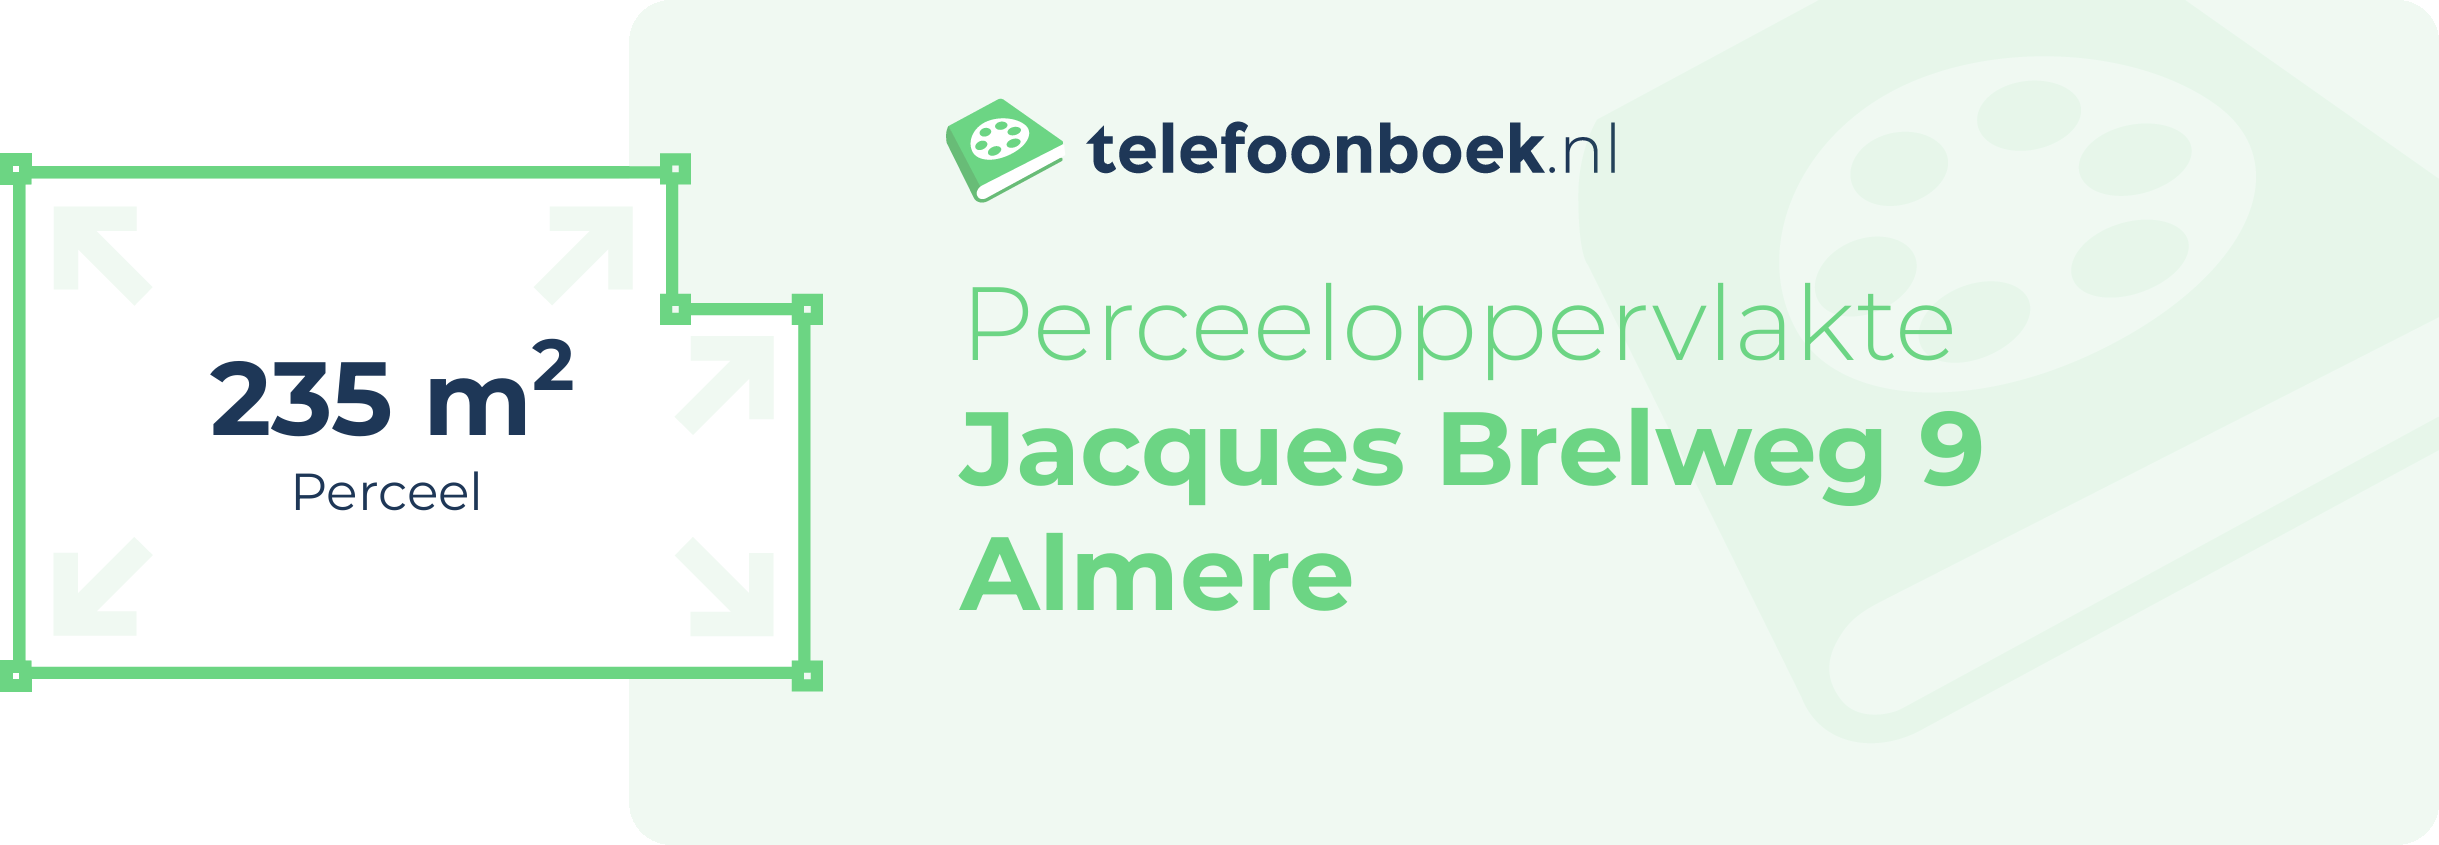 Perceeloppervlakte Jacques Brelweg 9 Almere